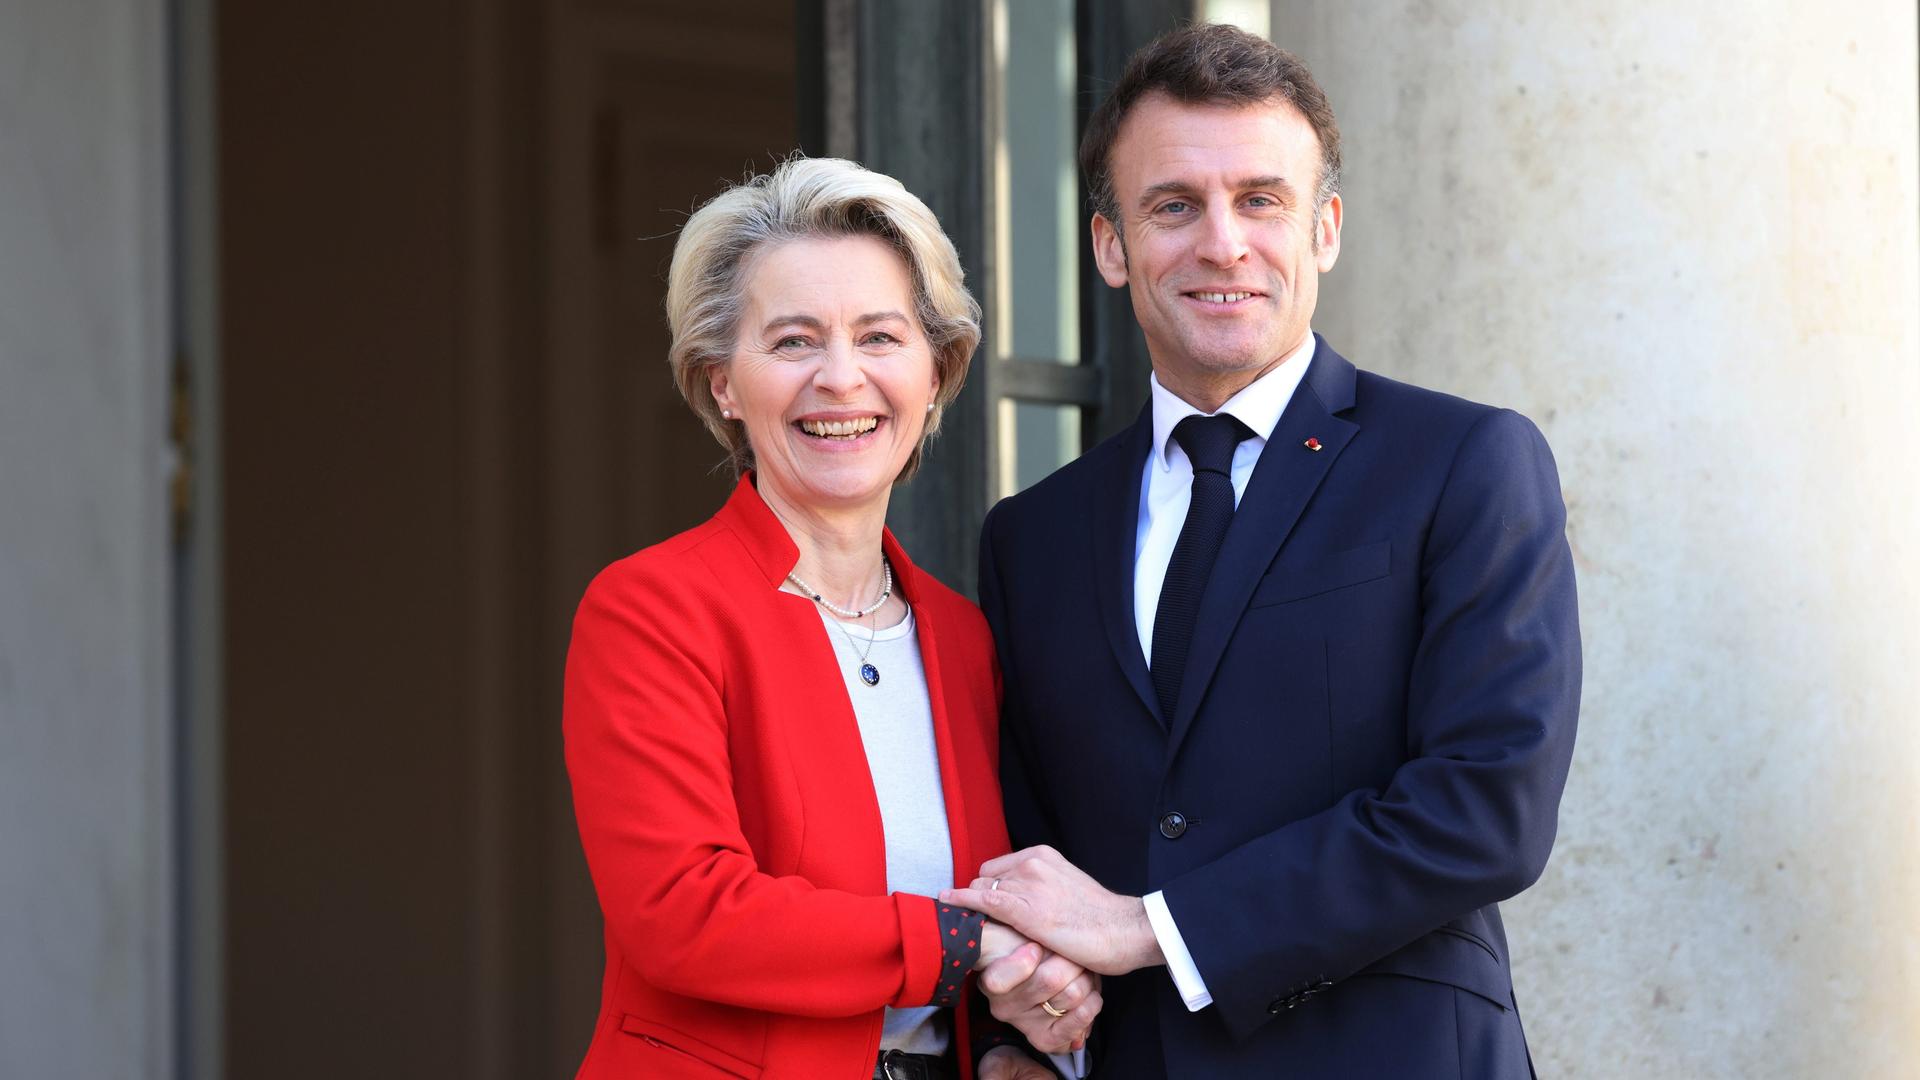 Ursula von der Leyen und Emmanuel Macron stehen in die Kamera lachend nebeneinander. Sie trägt ein rotes Sacko, er ein blaues.